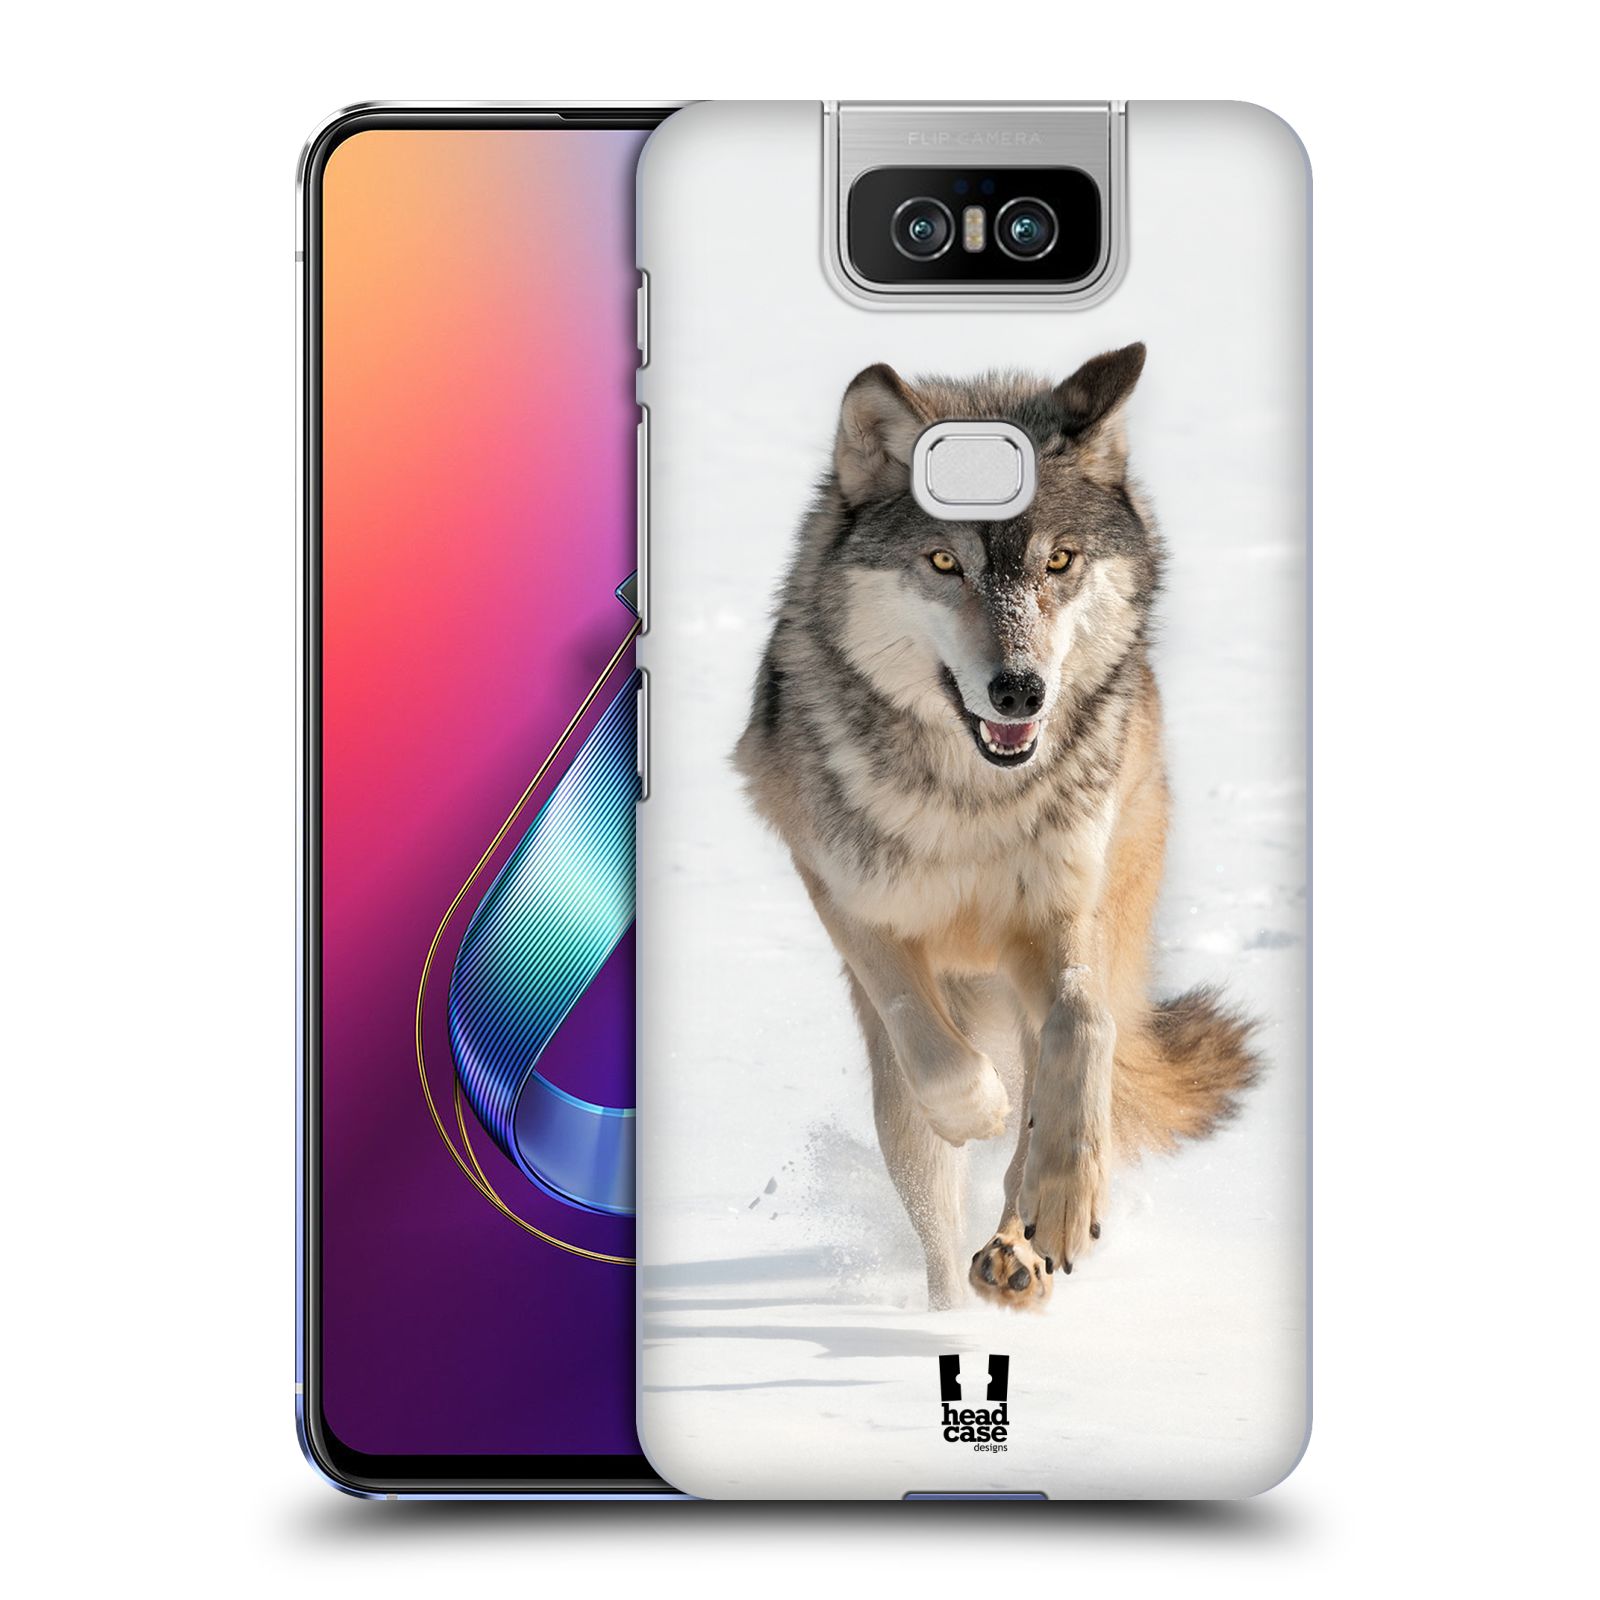 Zadní obal pro mobil Asus Zenfone 6 ZS630KL - HEAD CASE - Svět zvířat divoký vlk